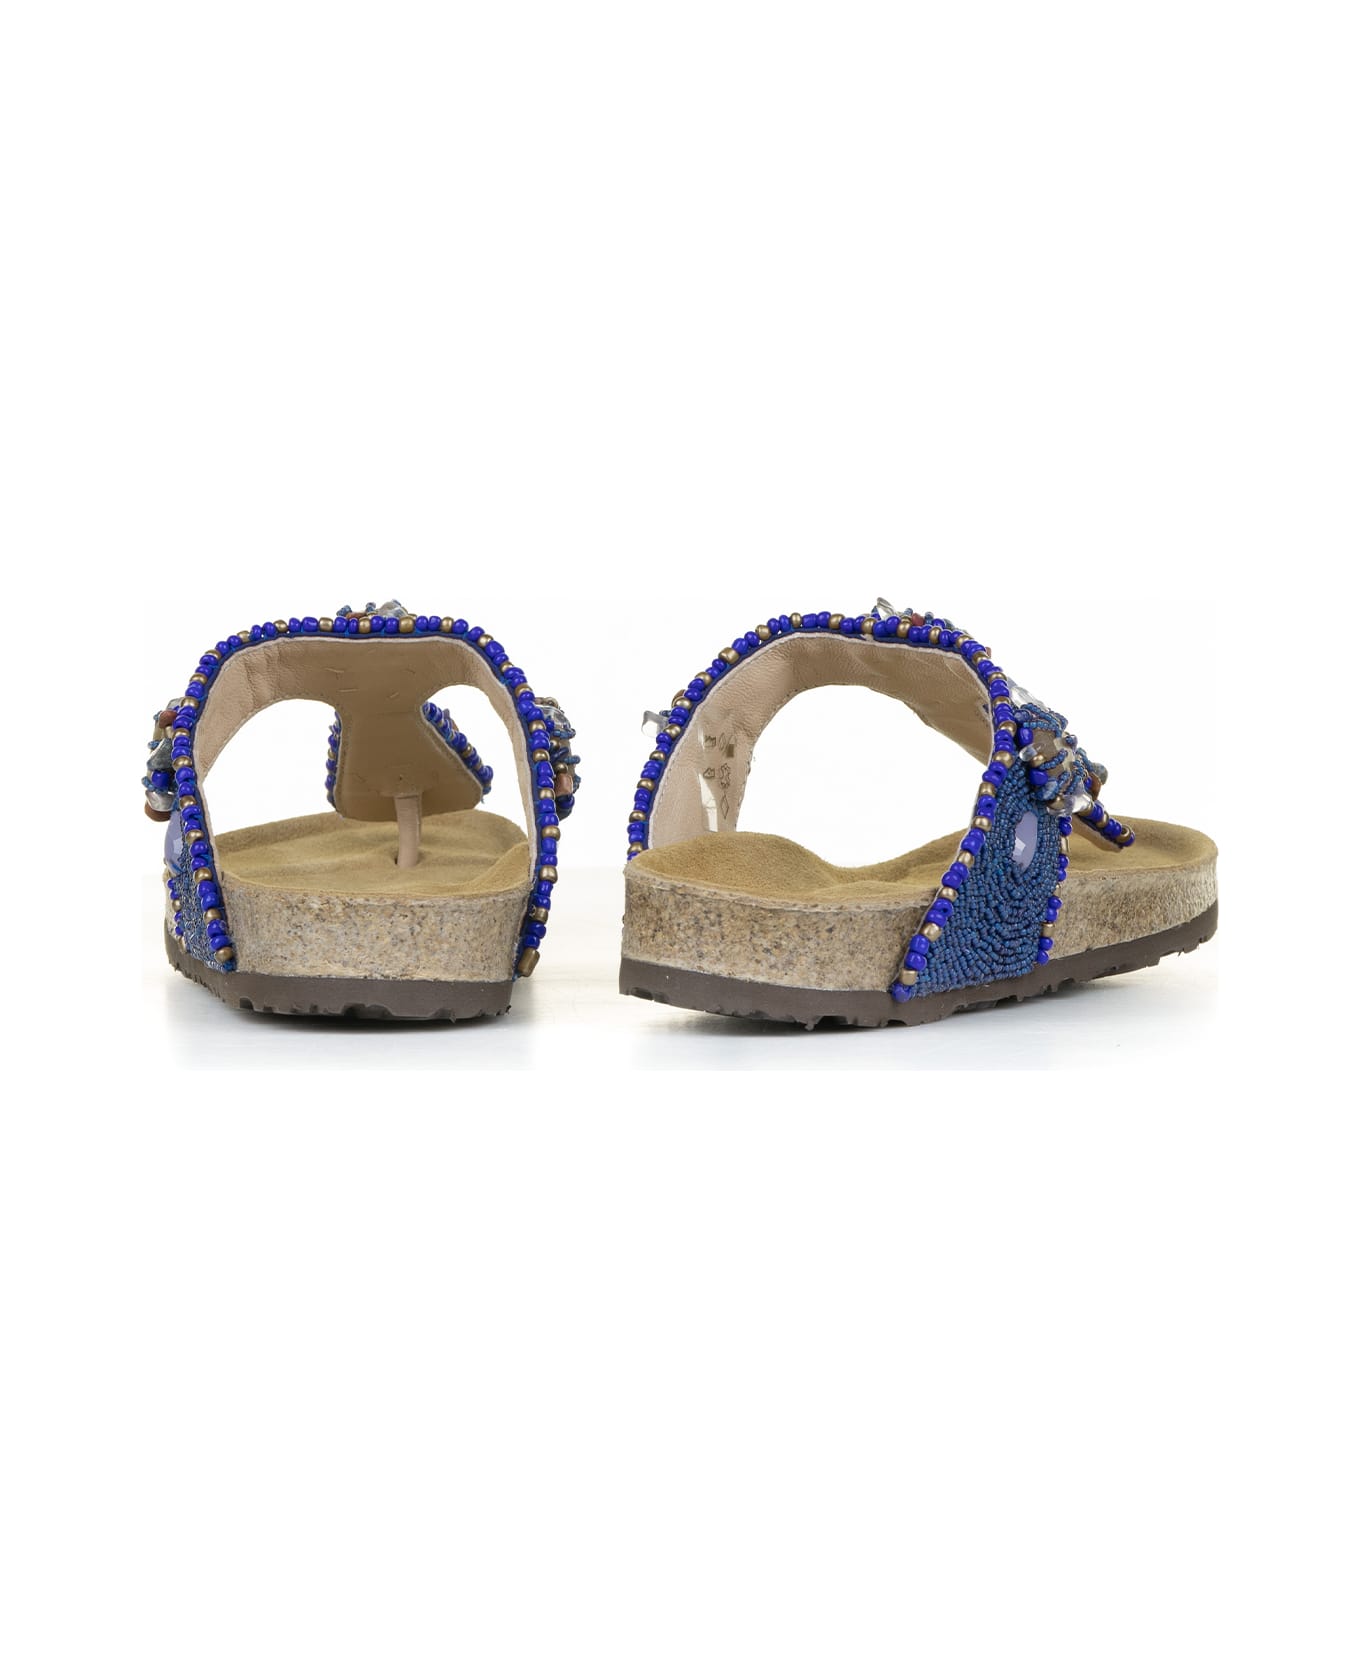 Malìparmi Flip-flops With Jewelery Embroidery On Beads - BLU/BEIGE サンダル